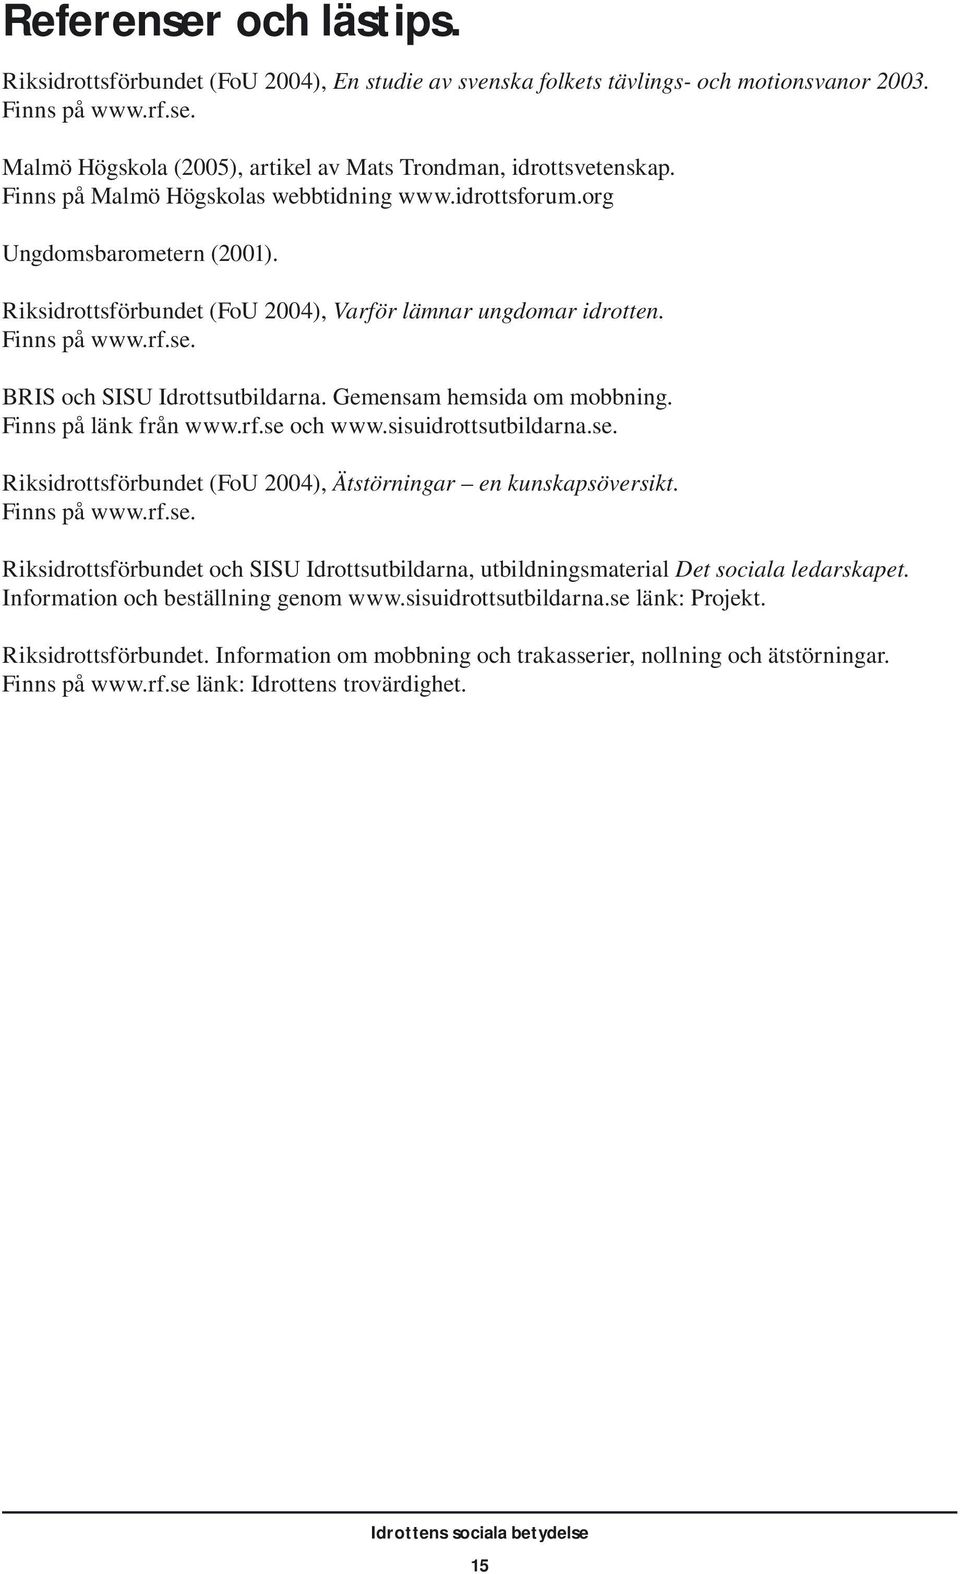 BRIS och SISU Idrottsutbildarna. Gemensam hemsida om mobbning. Finns på länk från www.rf.se och www.sisuidrottsutbildarna.se. Riksidrottsförbundet (FoU 2004), Ätstörningar en kunskapsöversikt.